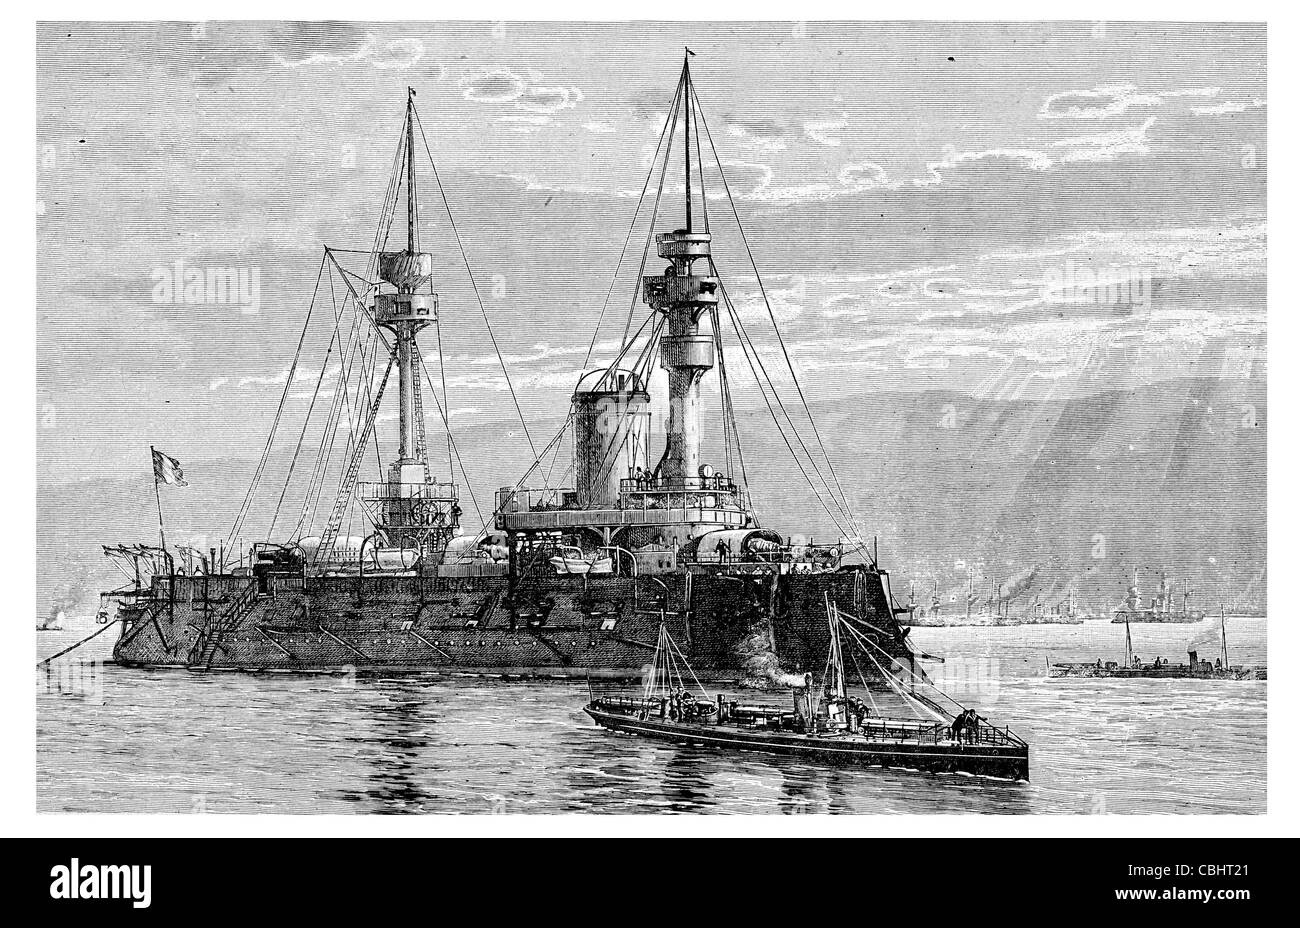 Le grand cuirassé de la Marine française de navire Naval voile marin marine navire de guerre à vapeur propulsé blindage d'acier armor Banque D'Images